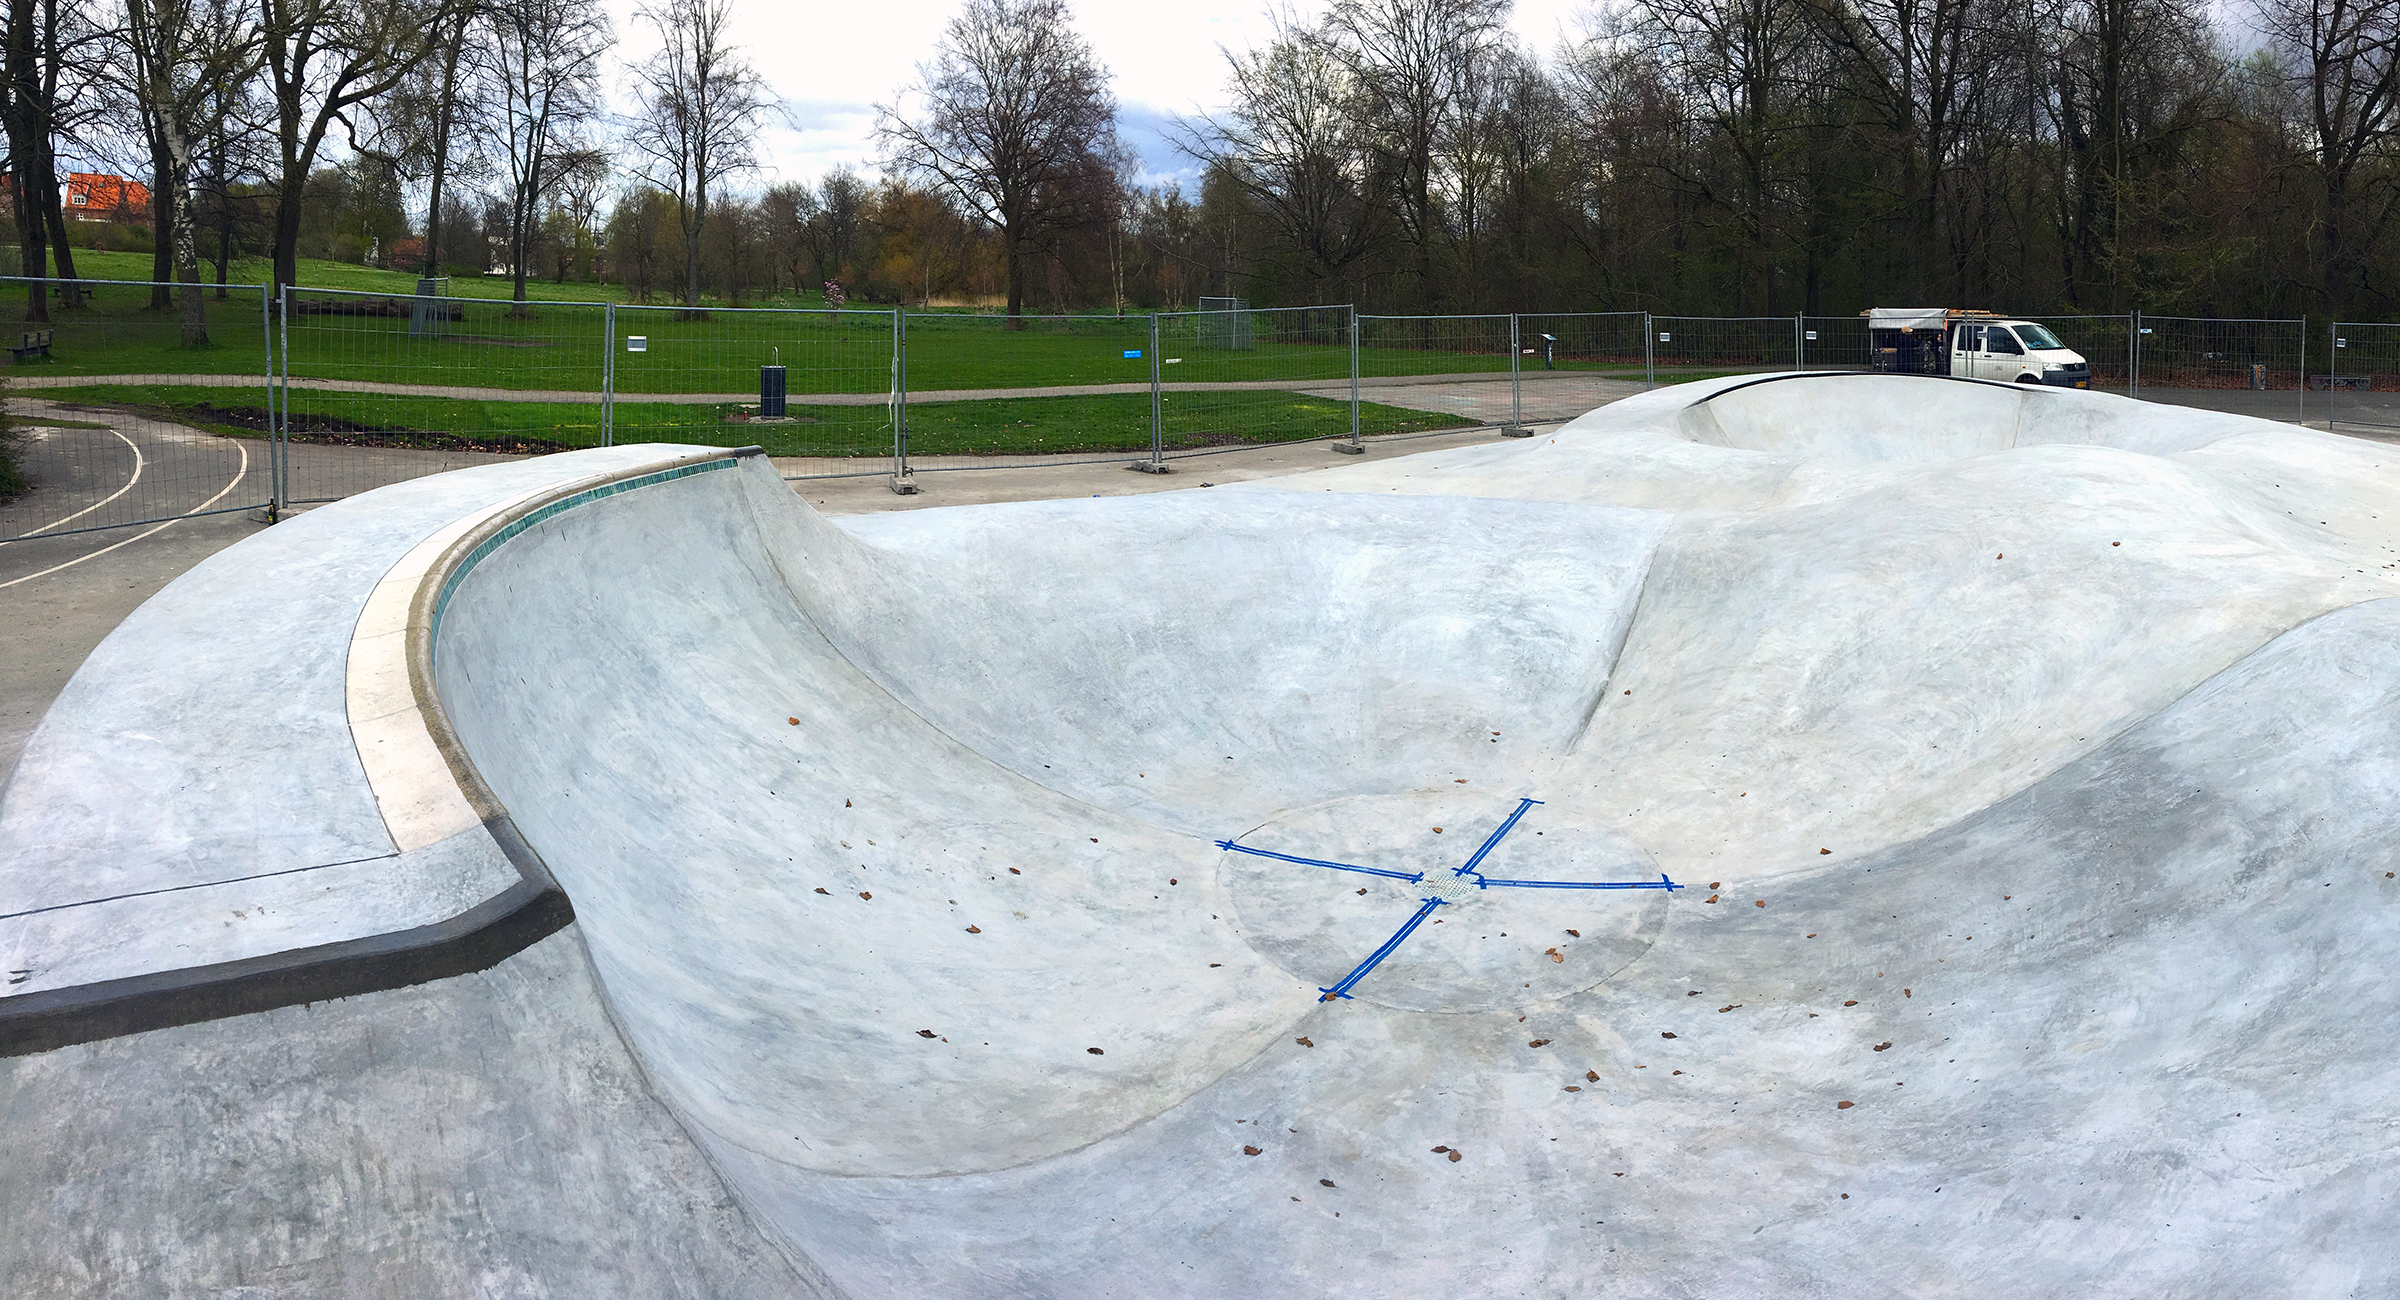 Billedet viser to bowls i beton opført i en park